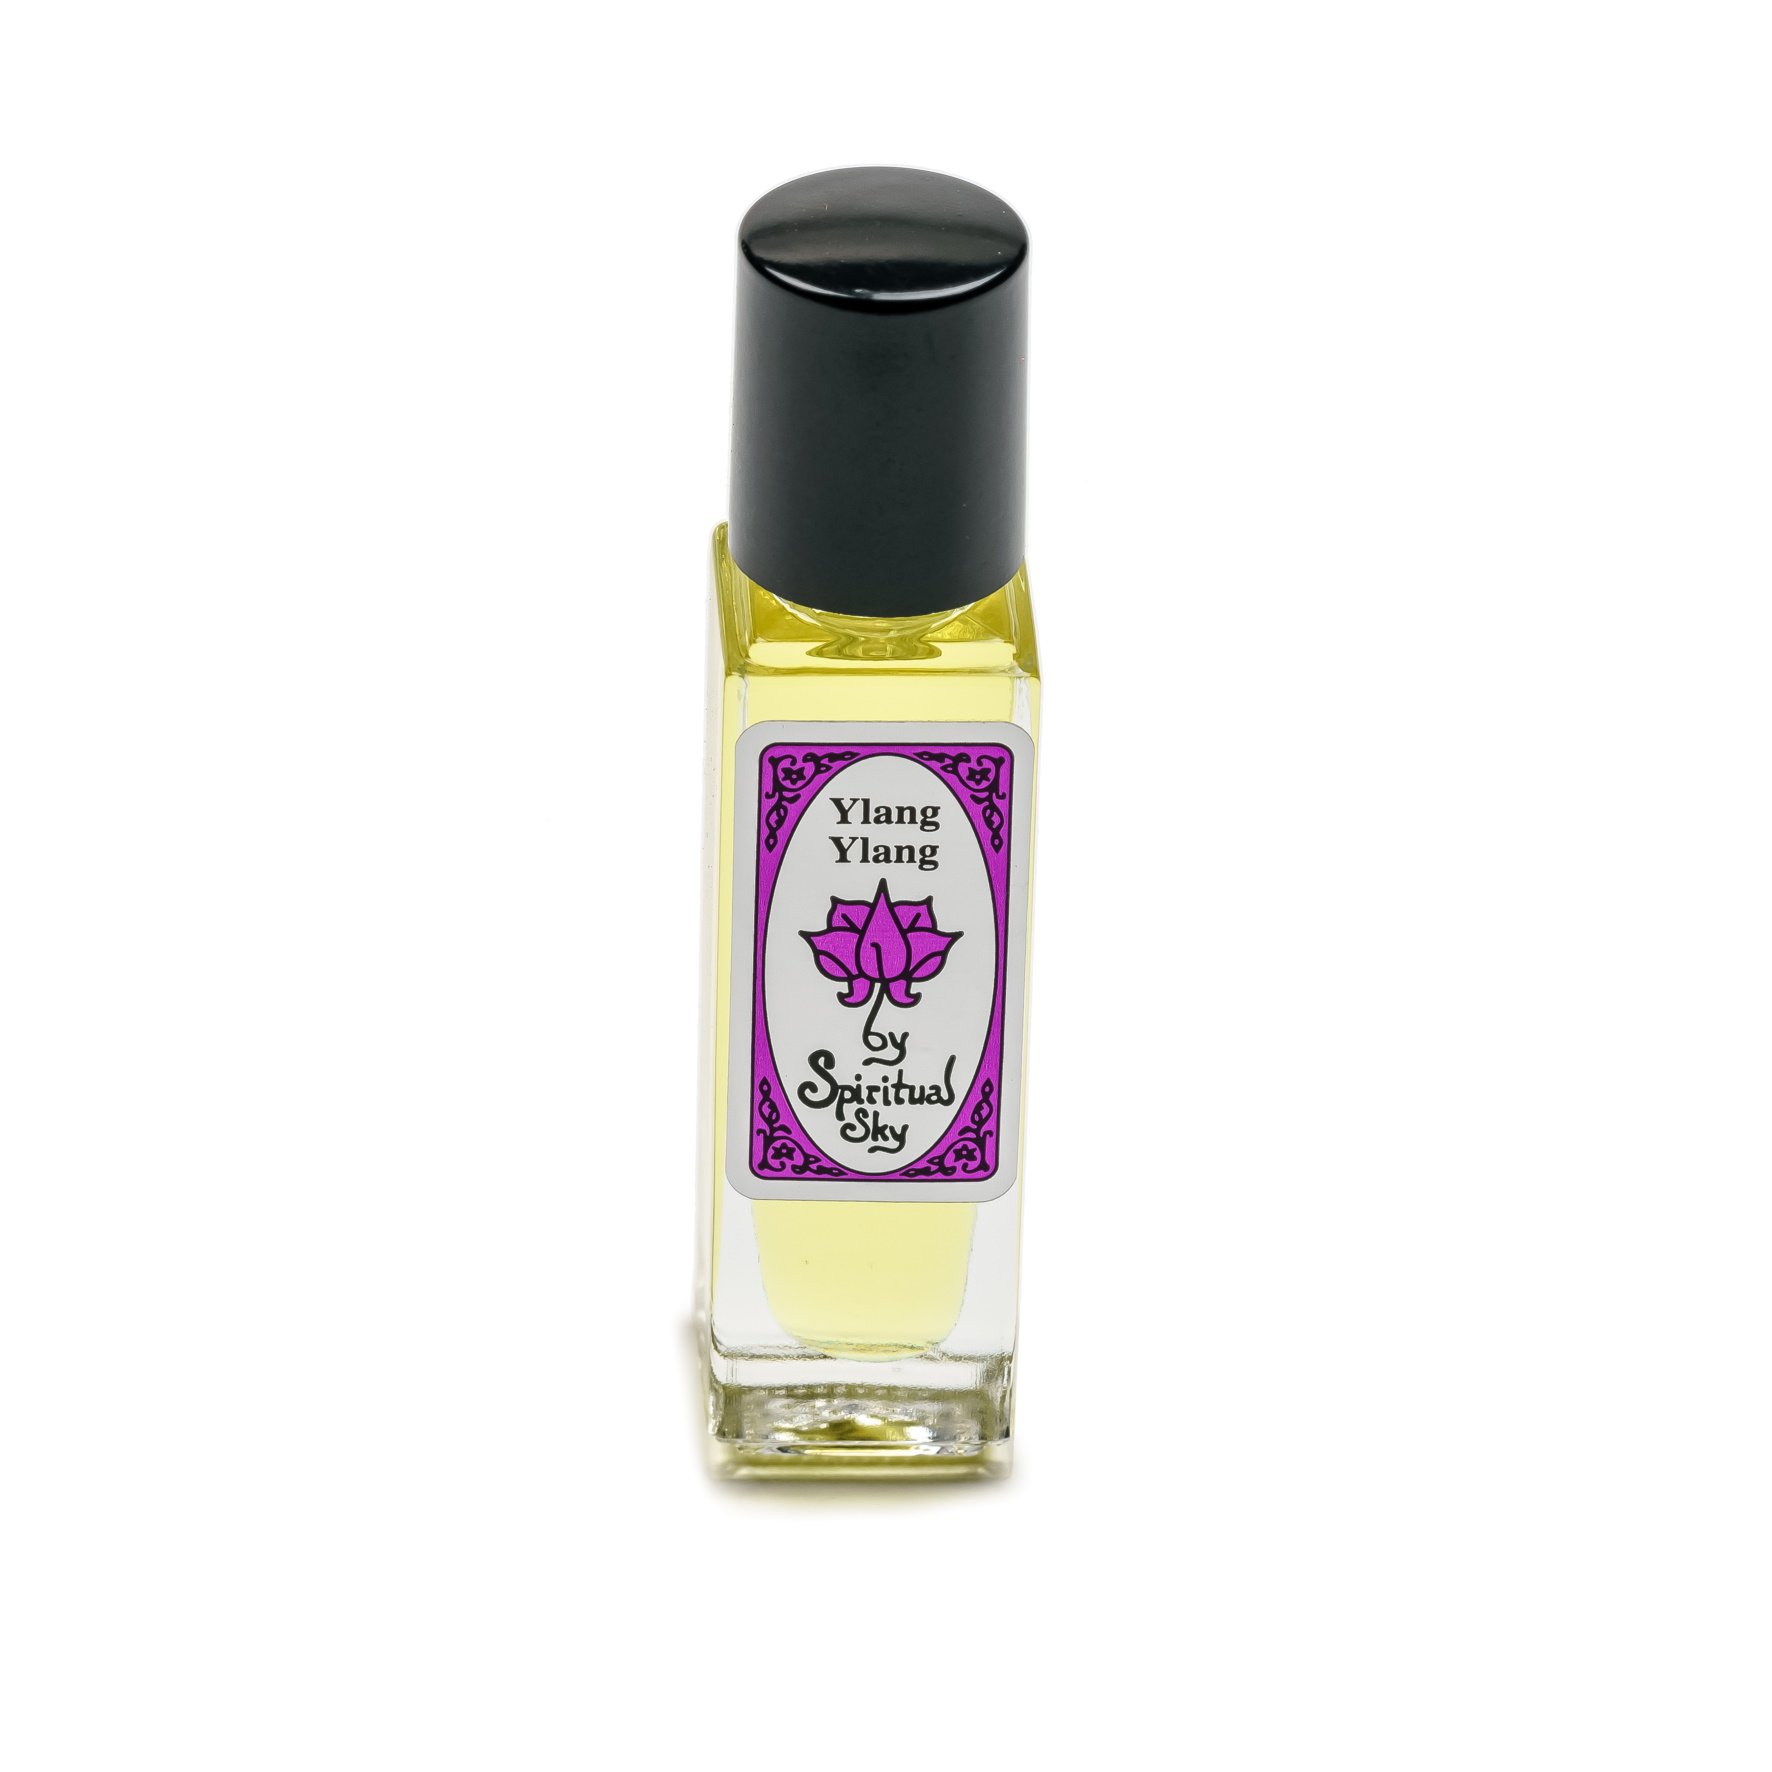 Ylang Ylang Spiritual Sky Perfume Oil